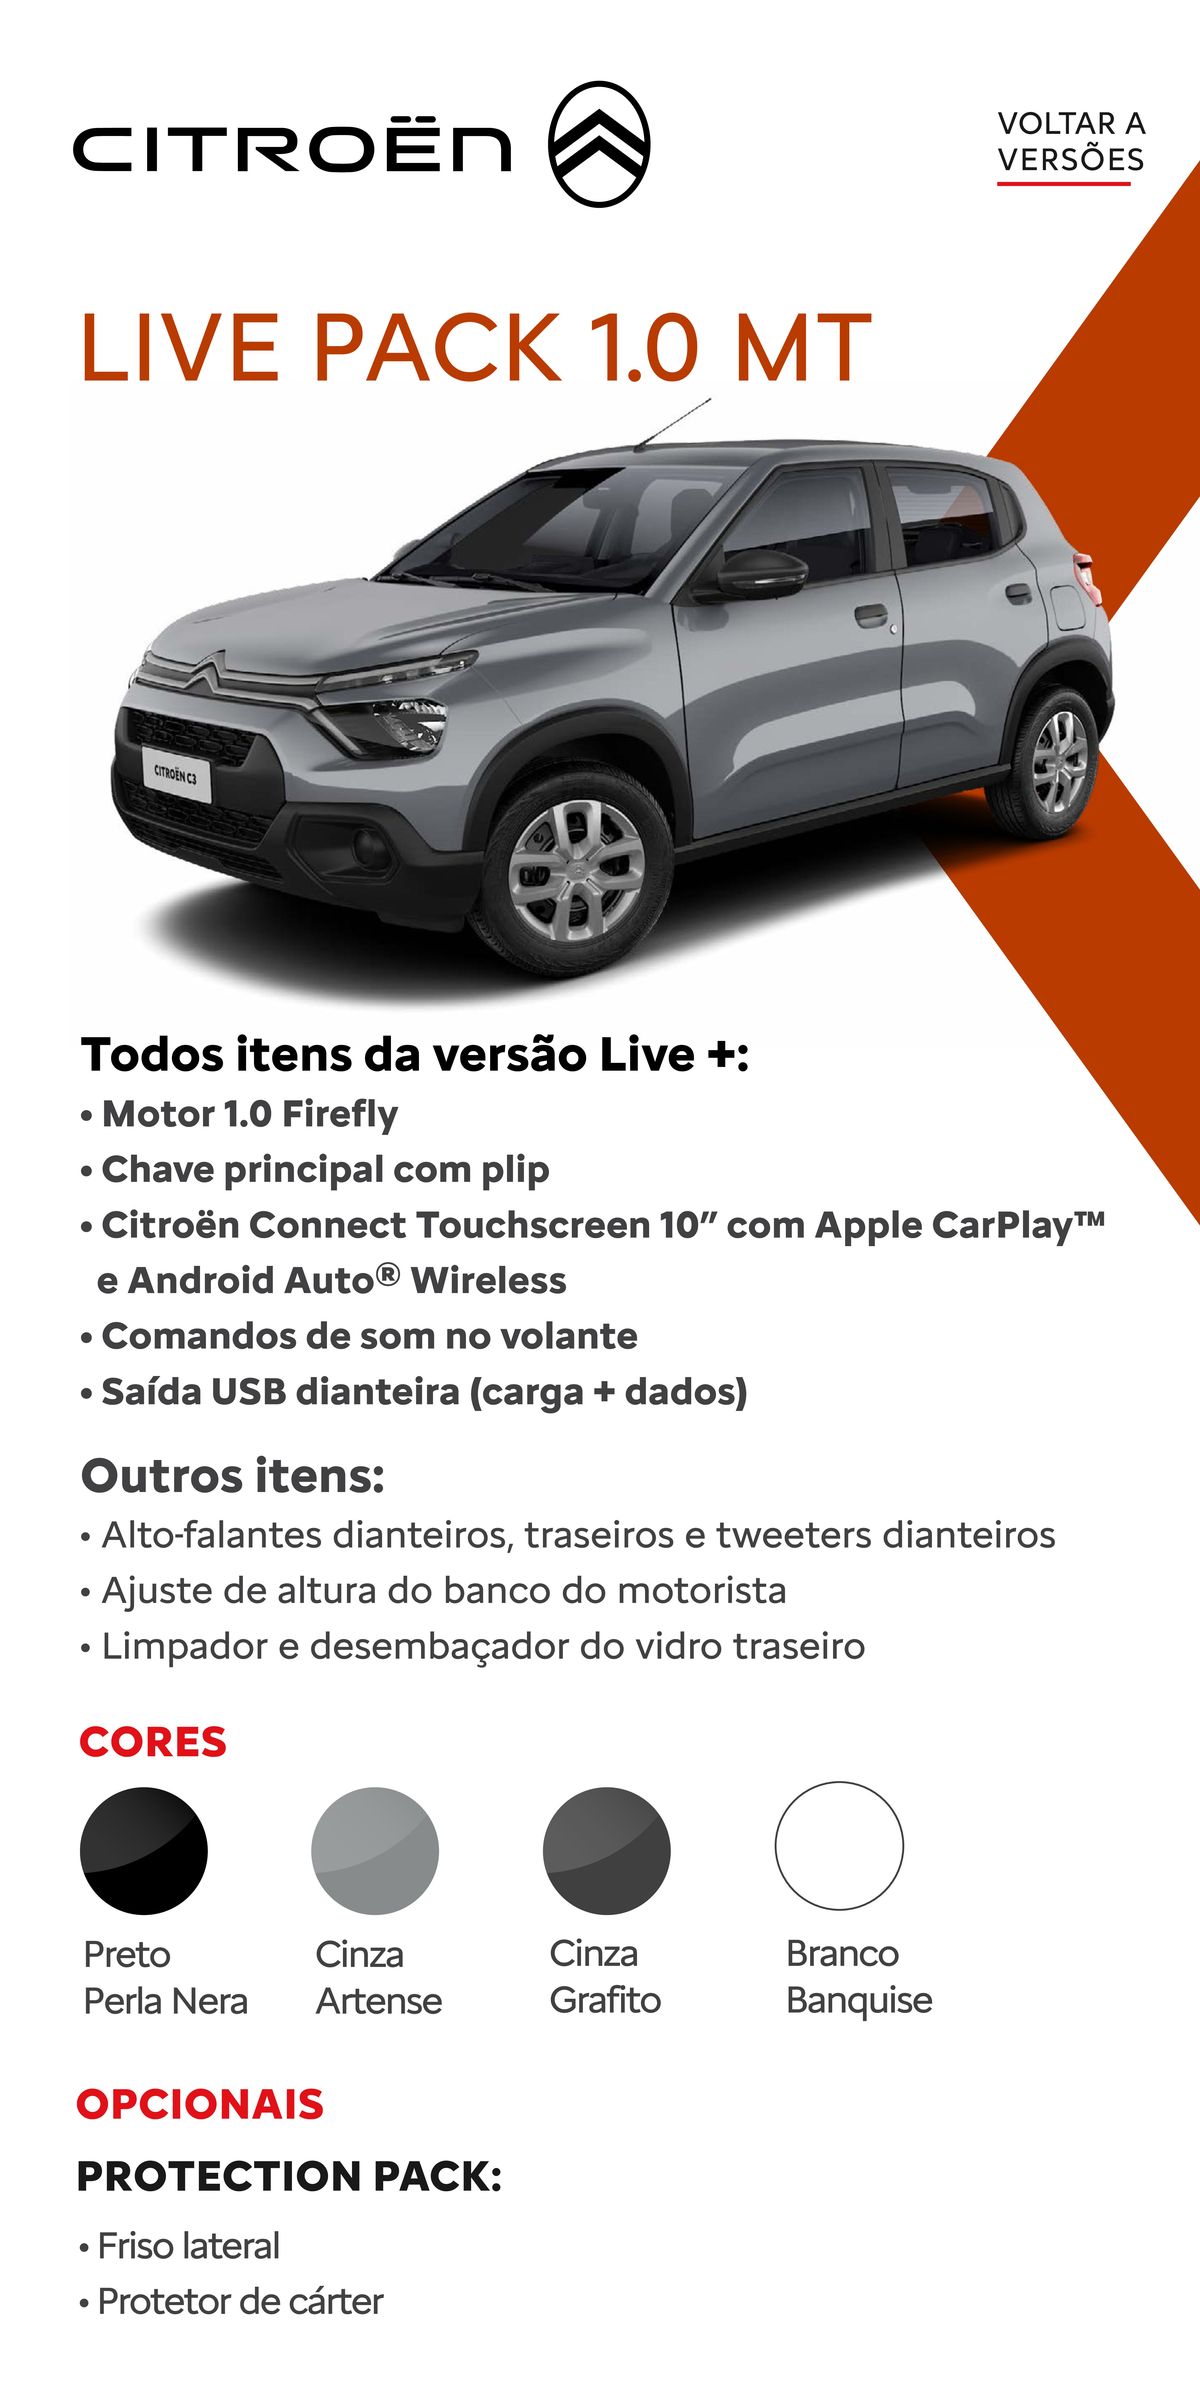 Live Pack 1.0 MT com Citroën Connect Touchscreen 10”